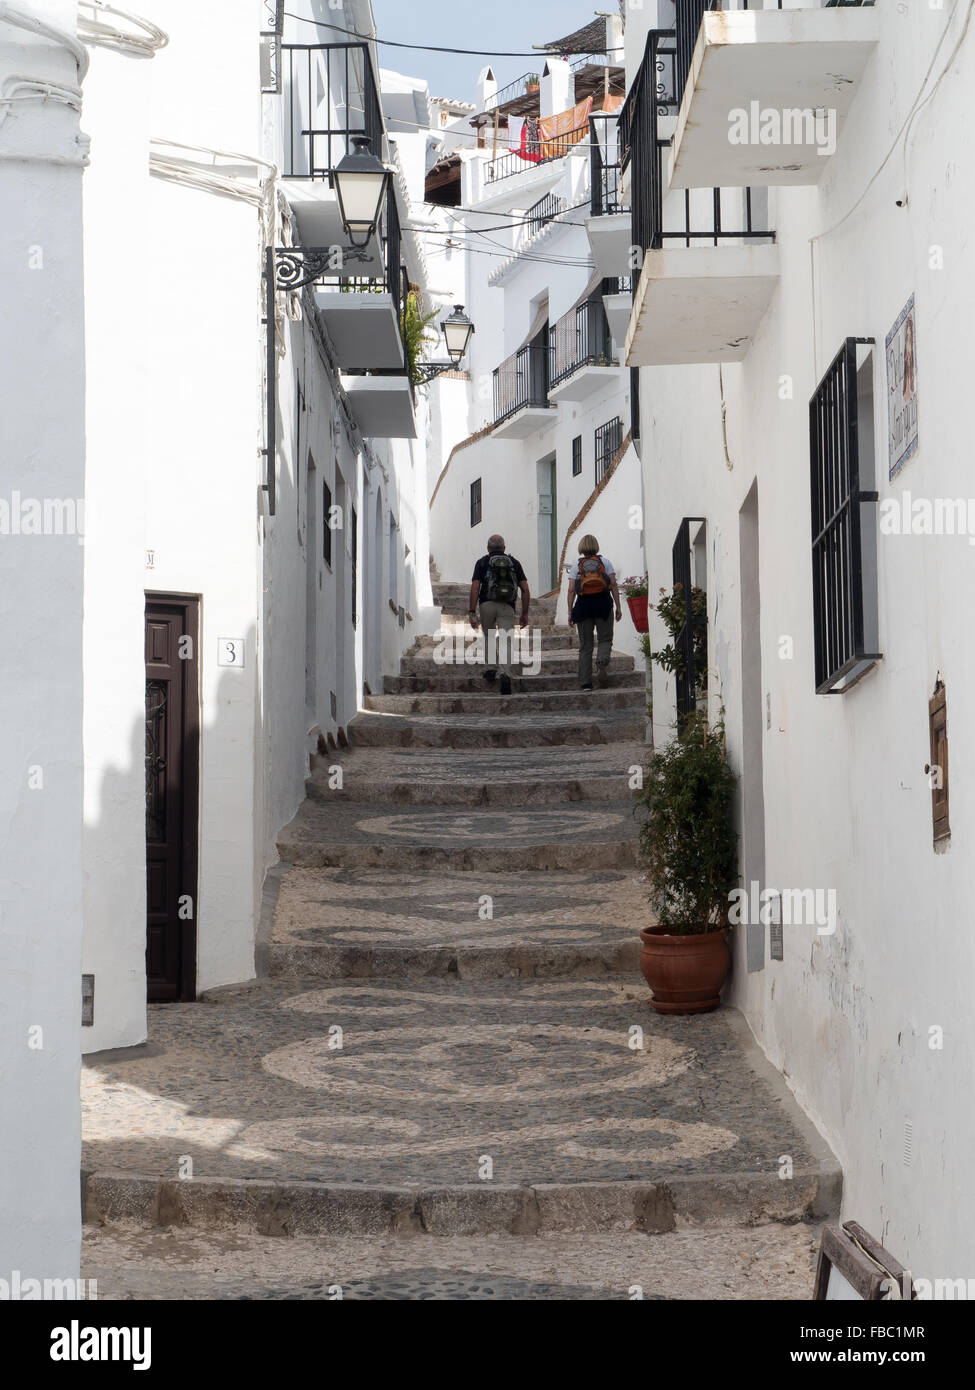 Frigiliana a white town near Nerja, Costa Del Sol, Andalusia, Spain, Stock Photo